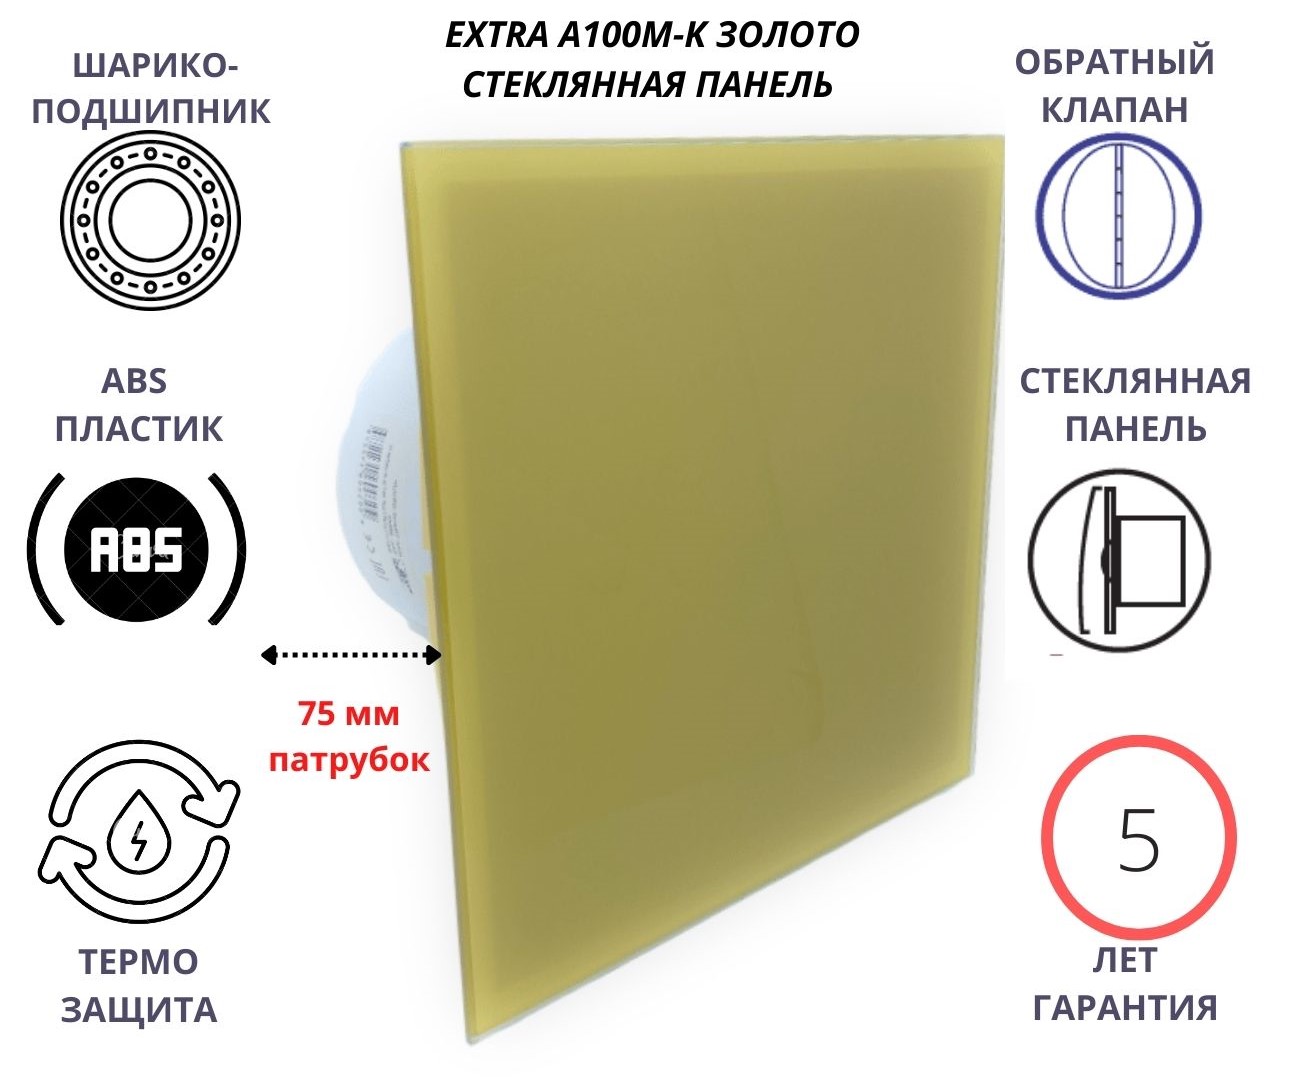 Вентилятор D100мм со стеклянной золотой панелью EXTRA A100М-K, Сербия колокольчик набор 40 шт размер 1 шт 0 6 см золотой